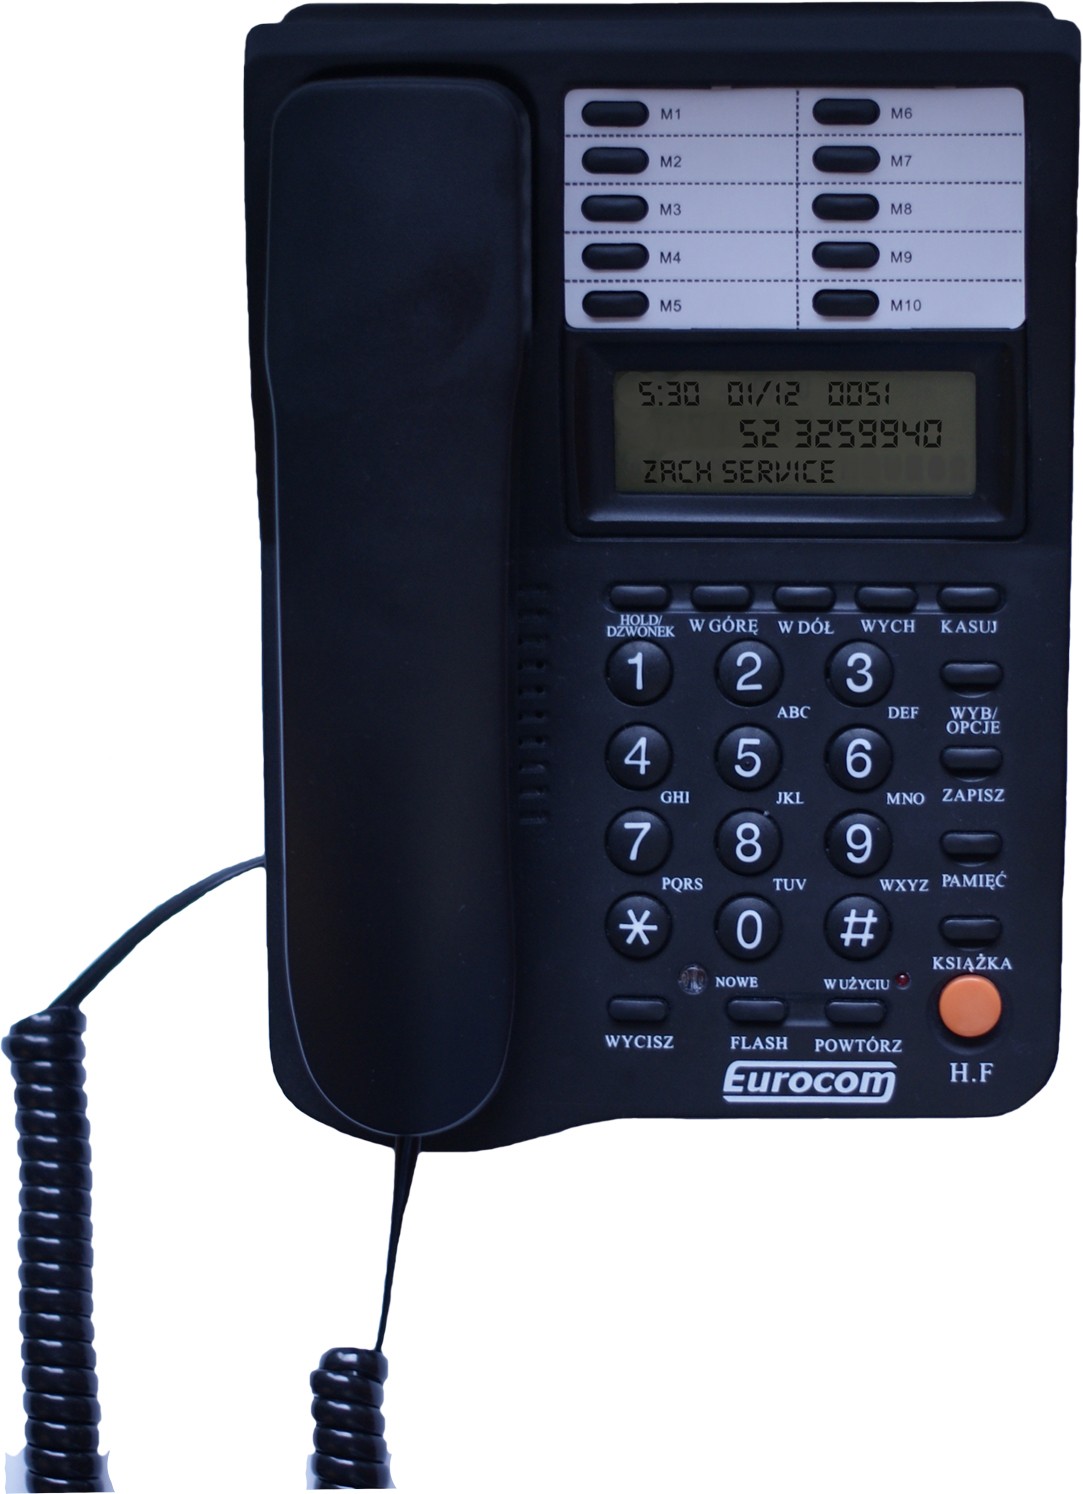 INSTRUKCJA OBSŁUGI TELEFONU SZNUROWEGO ZS-111 Przed